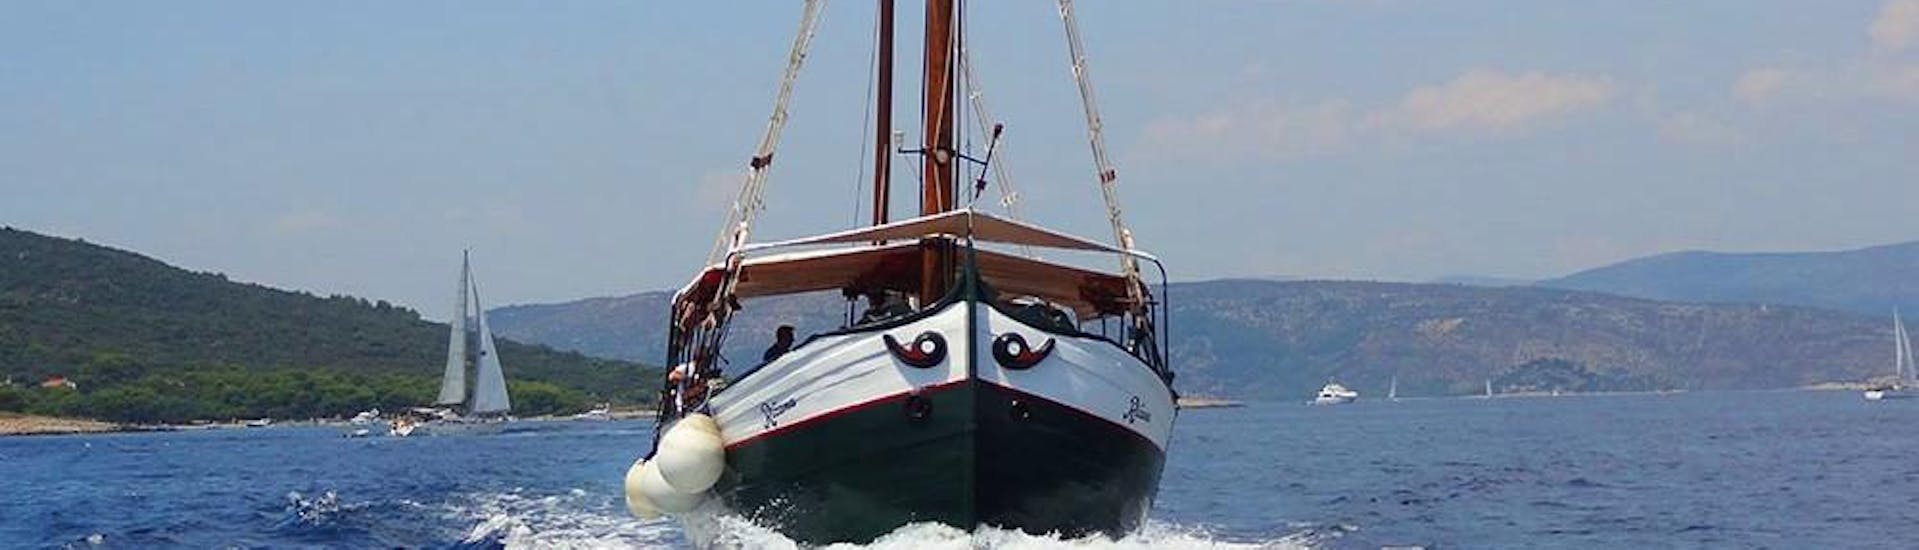 Während einer Bootstour von Trogir, Okrug und Medena zur Blauen Lagune mit Max Nautica Split steuert das Schiff auf die Blaue Lagune zu. 